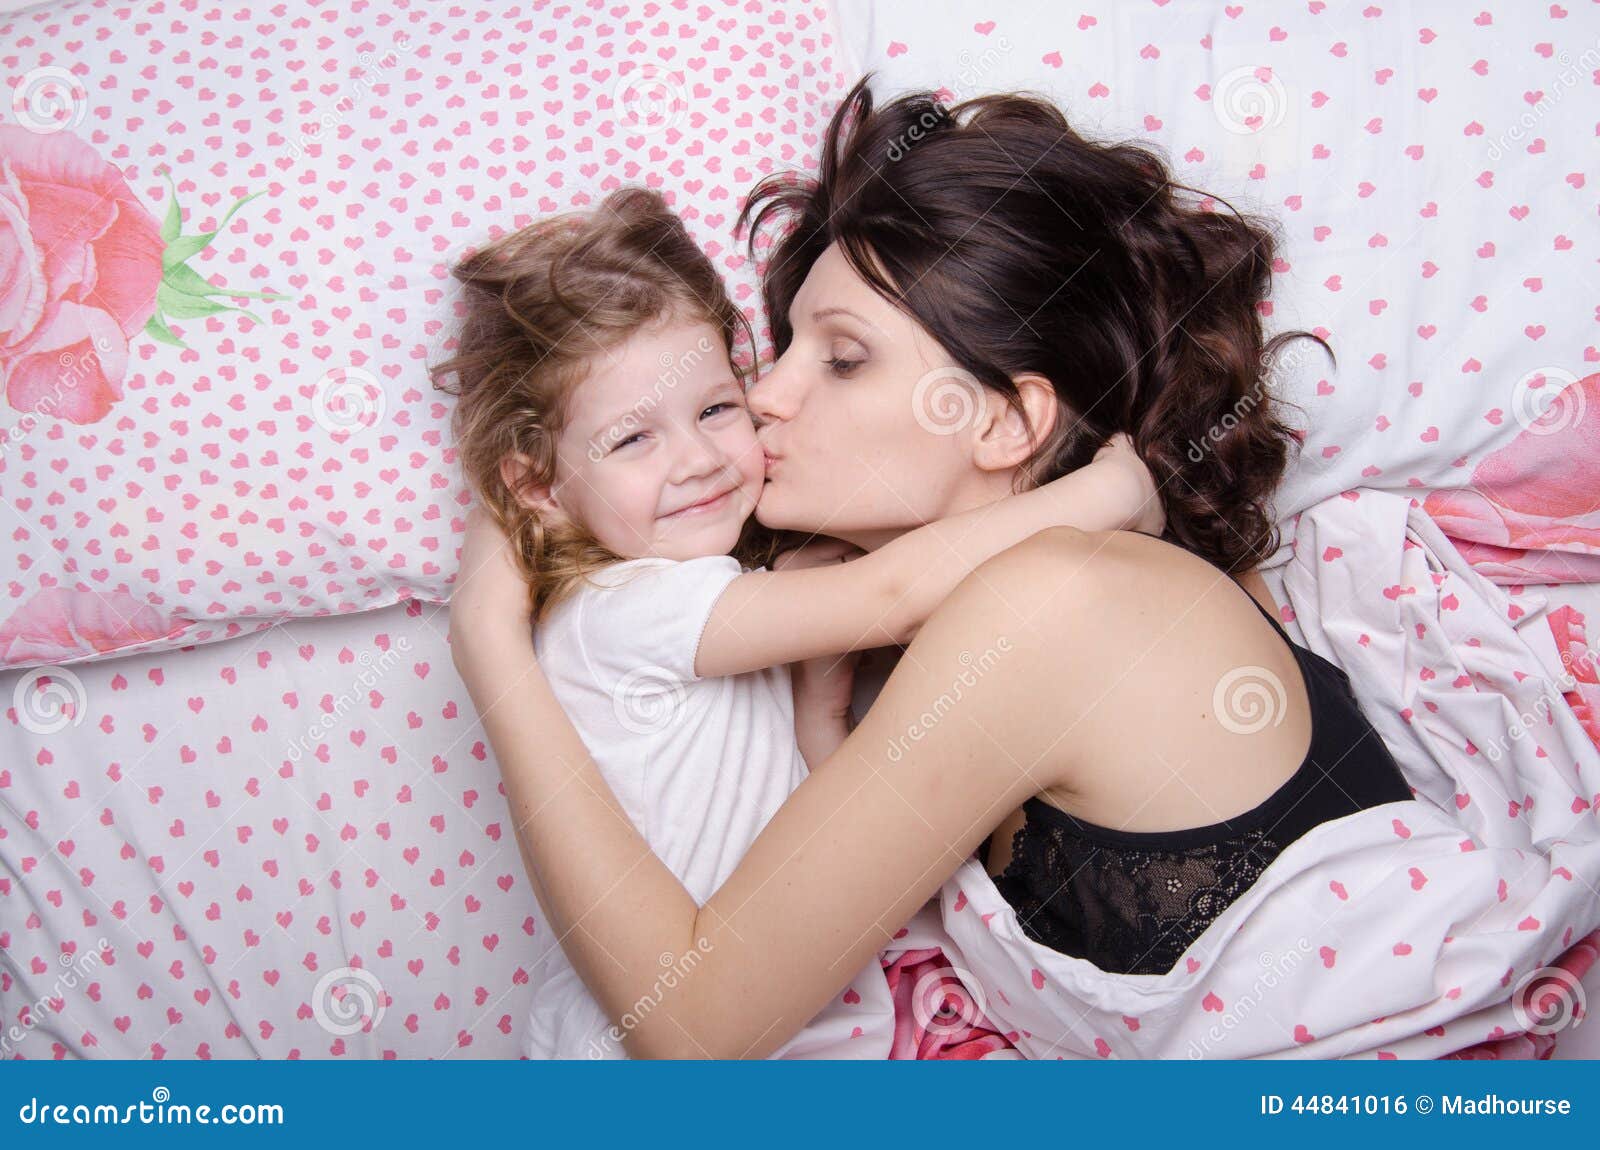 Мама ублажает дочкой. Мама целует дочку. Мама с дочкой уснули. Мама с дочкой на кровати. С дочей в кровати.